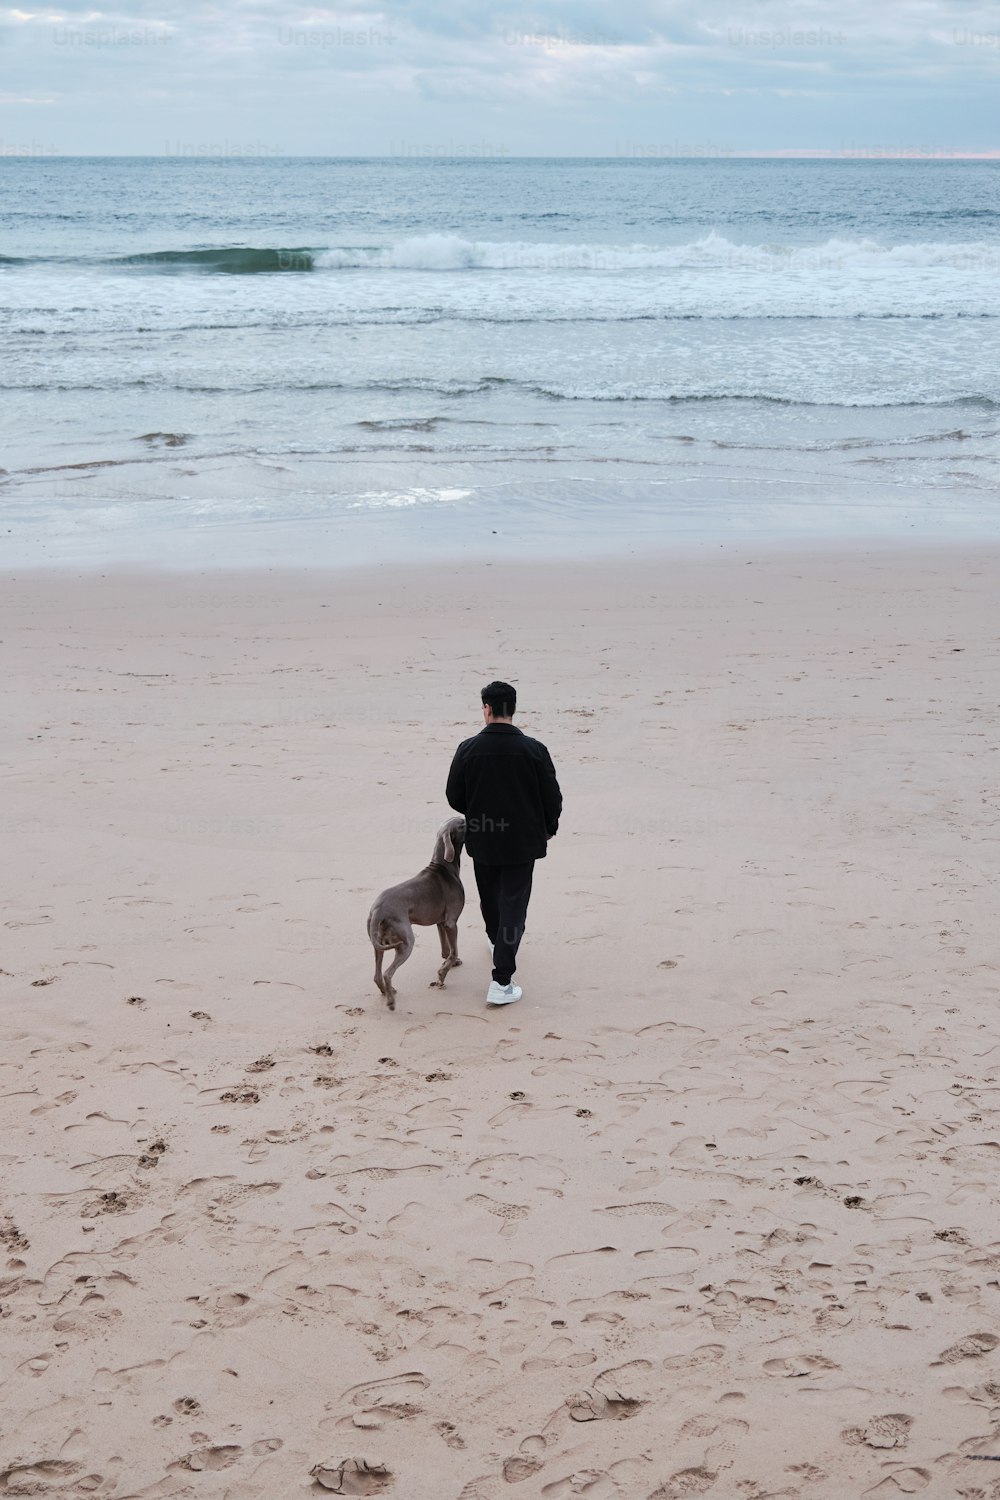 Un homme promenant un chien sur une plage au bord de l’océan